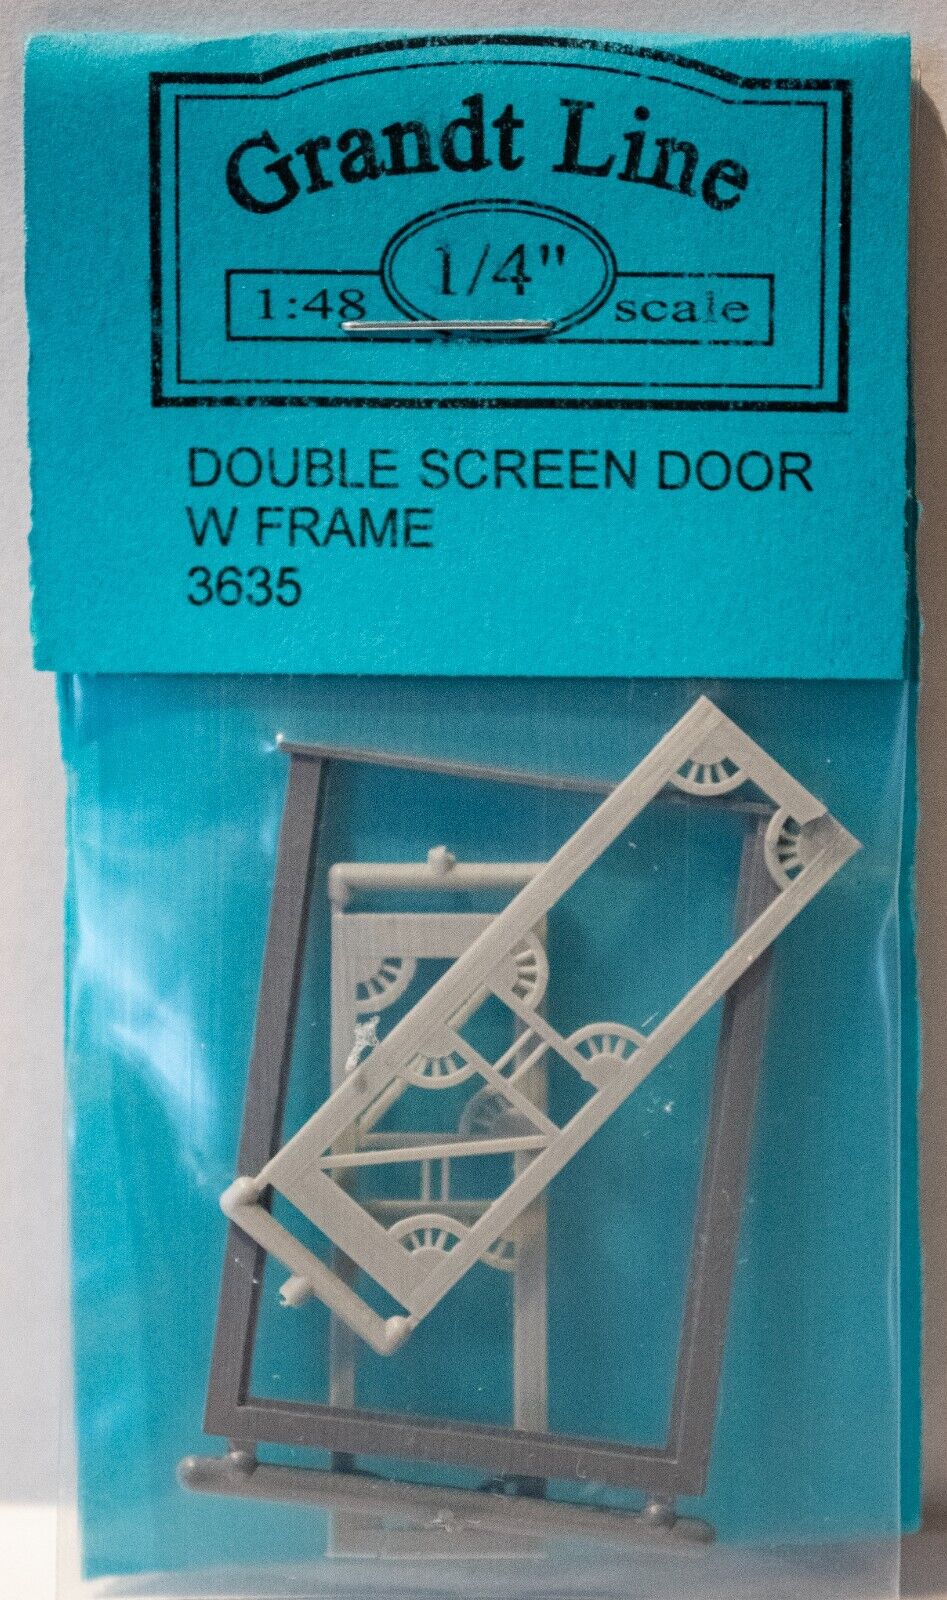 1/4" Scale DoubleScreen Door, 24"X75"